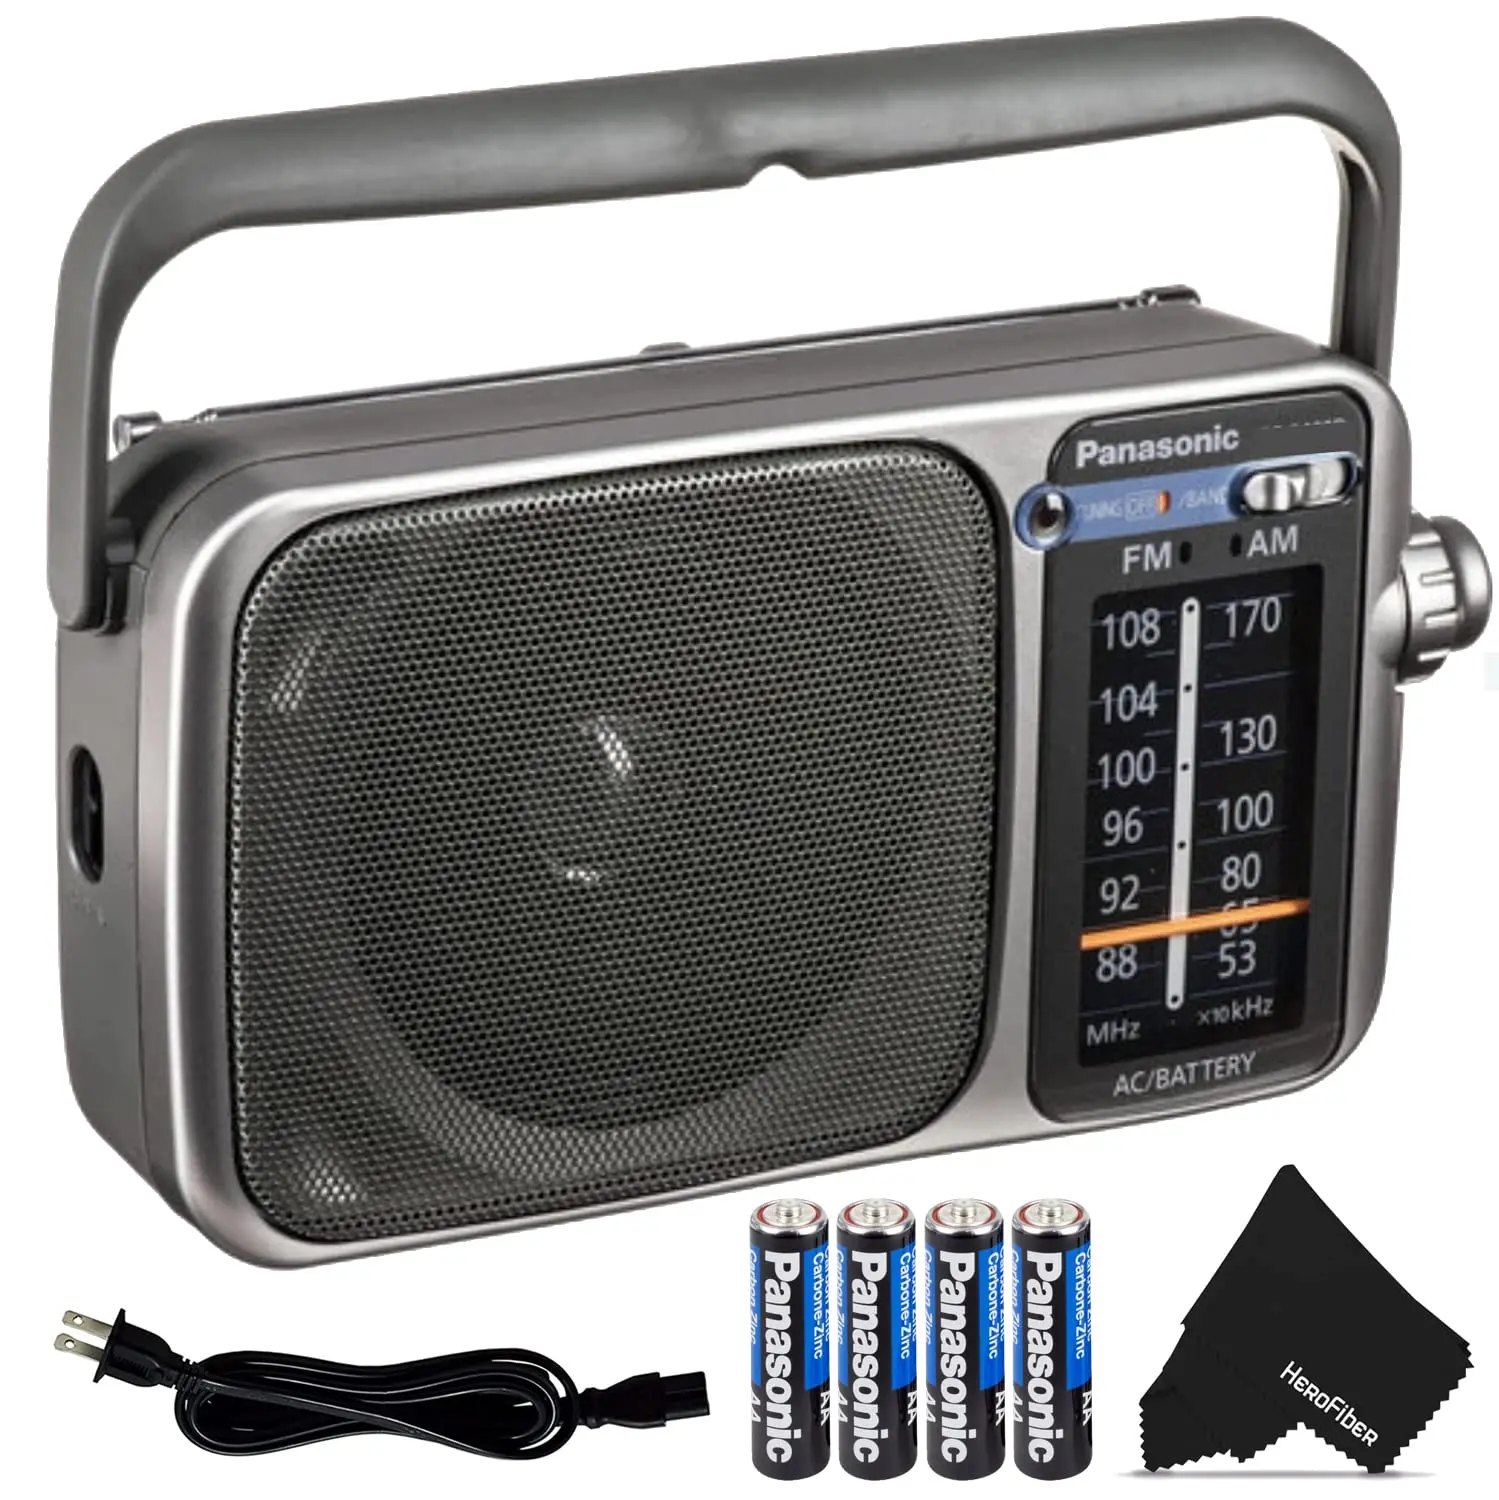 radio de baterias - Cuánto dura la batería de una radio